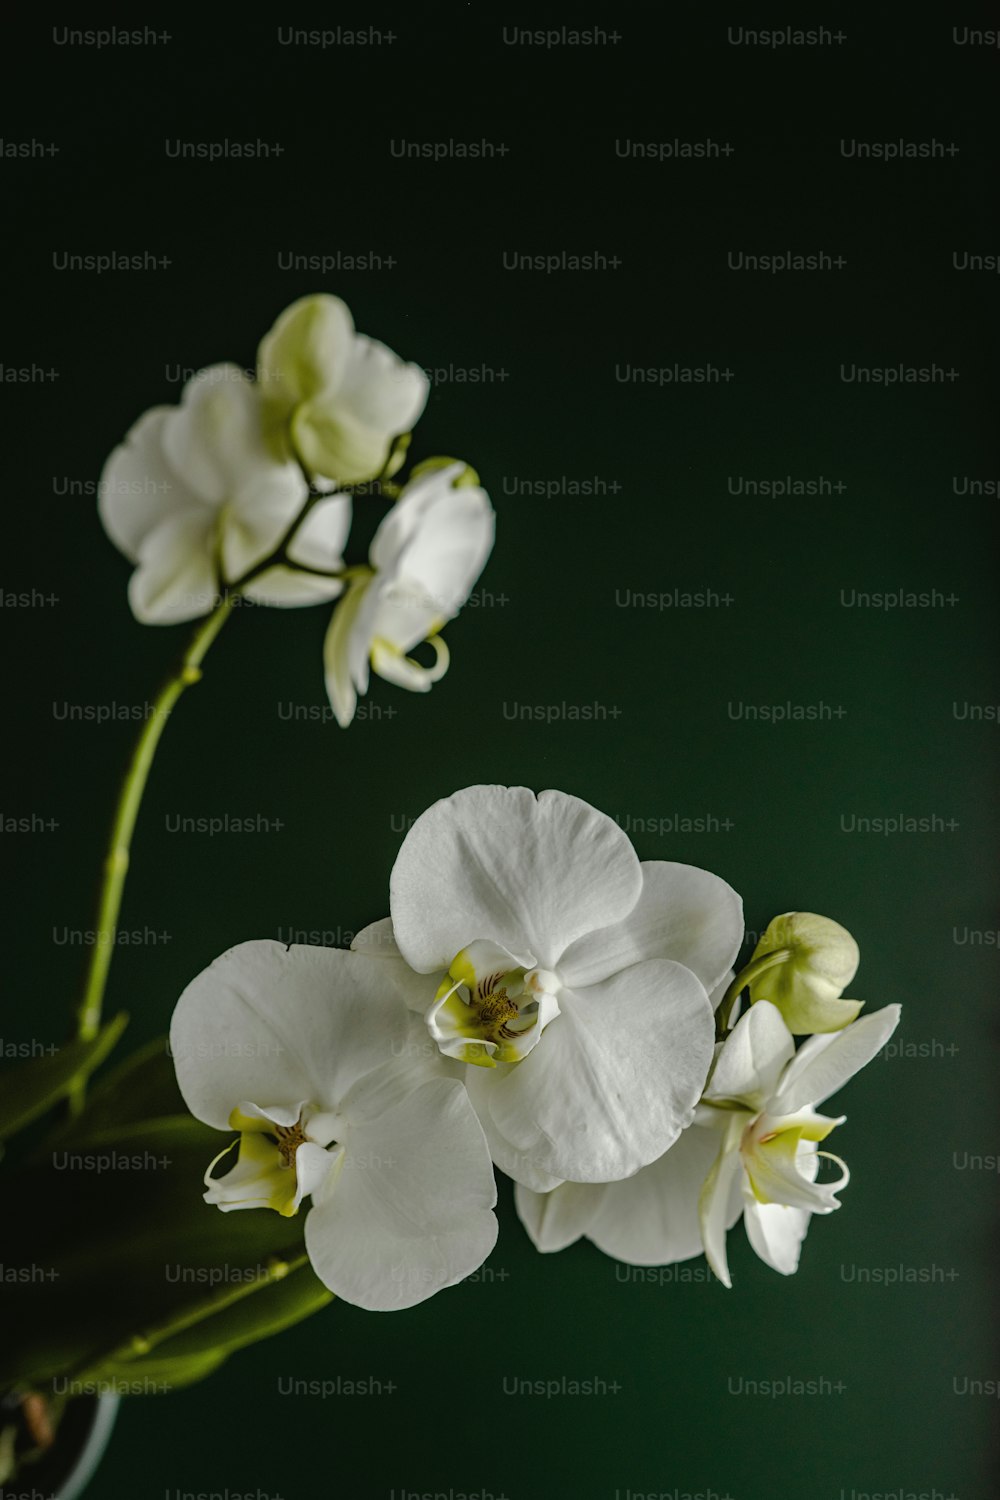 drei weiße Blumen in einer Vase auf einem Tisch